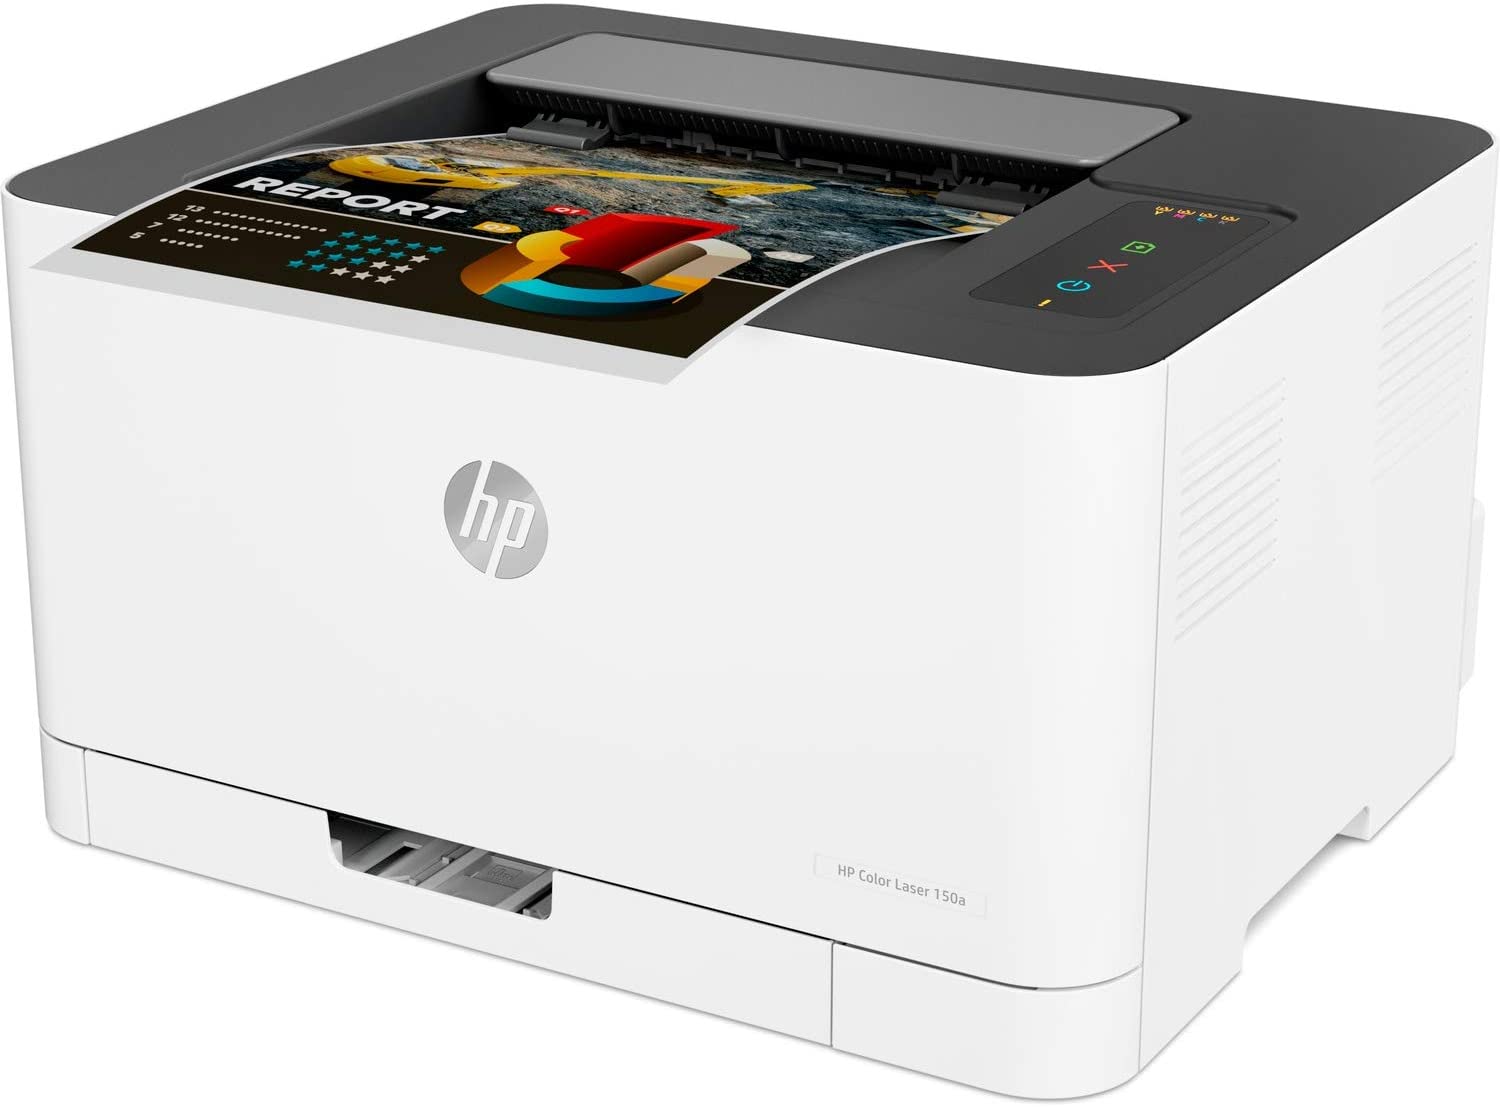 🖨️ HP Color Laser 150a | Análisis y Opiniones - A4toner ❤️